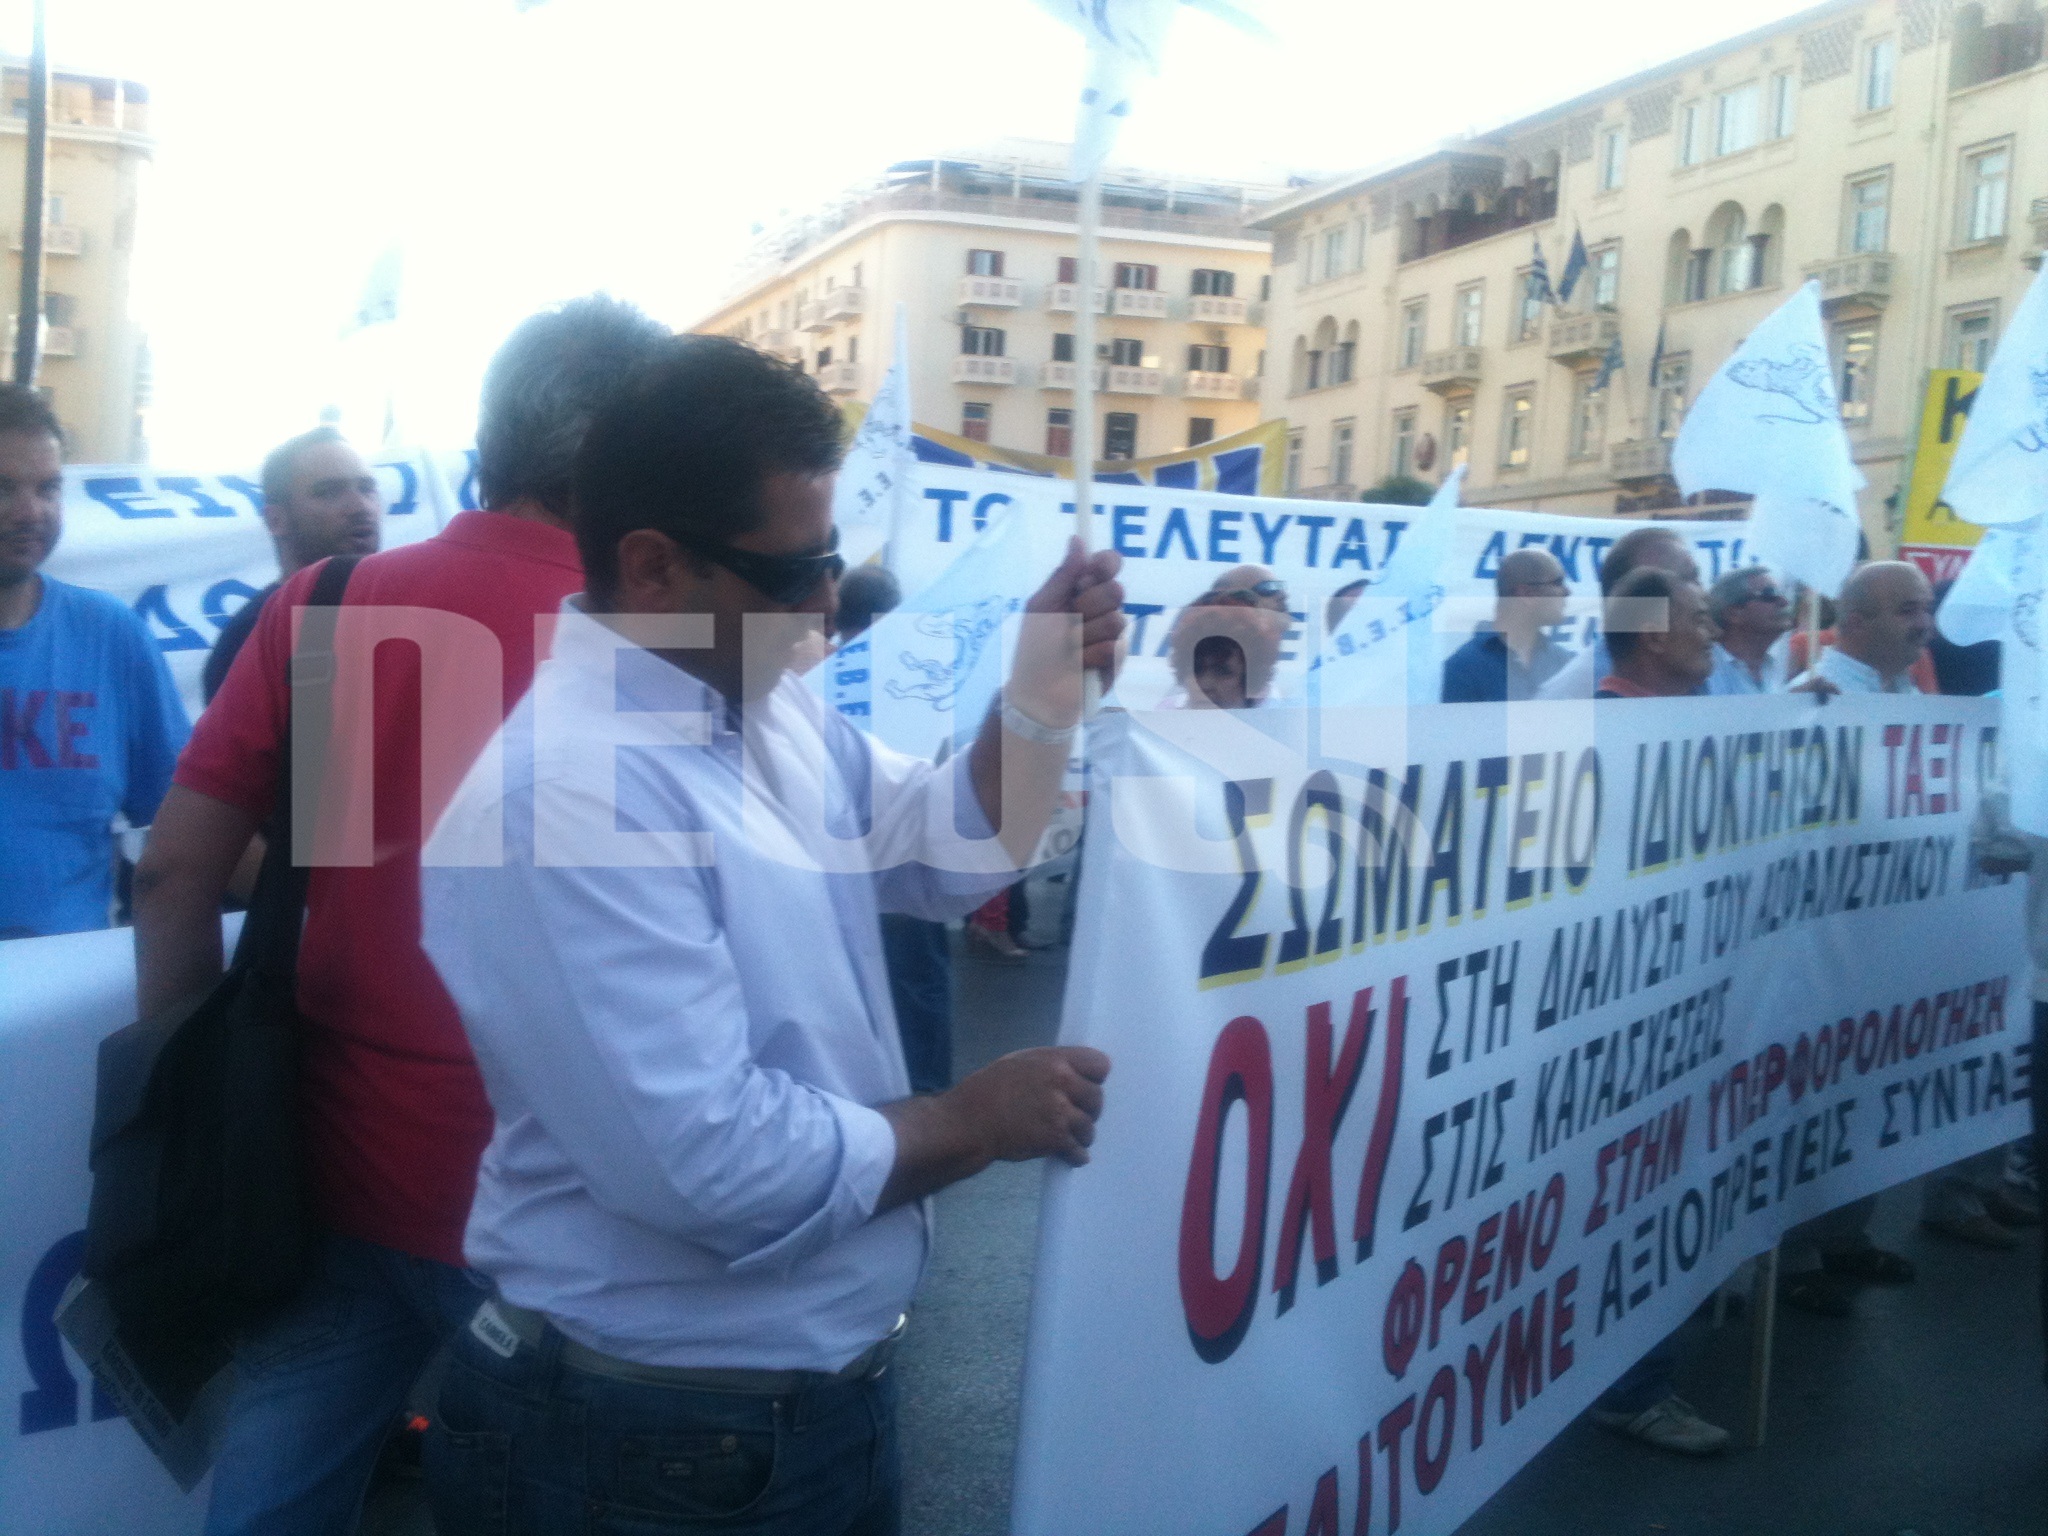 ΦΩΤΟ NEWSIT - Έξω από τη ΔΕΘ διαμαρτύρονται για την κυβερνητική πολιτική